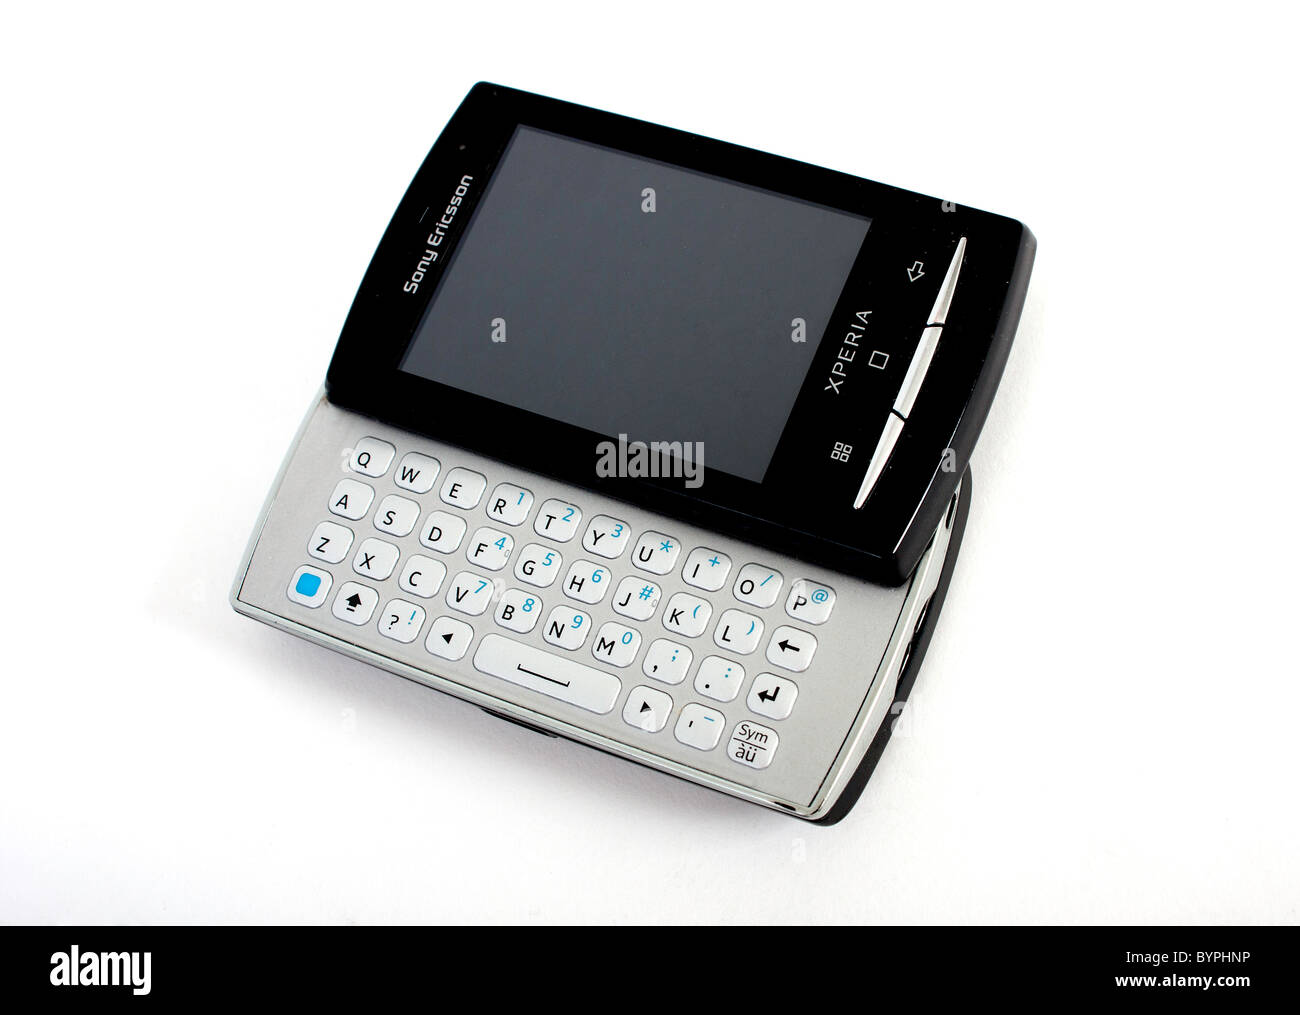 Das neue Sony Ericsson Xperia Mini pro Handy mit voller Slide-out QWERTY- Tastatur; einen leeren Bildschirm angezeigt Stockfotografie - Alamy